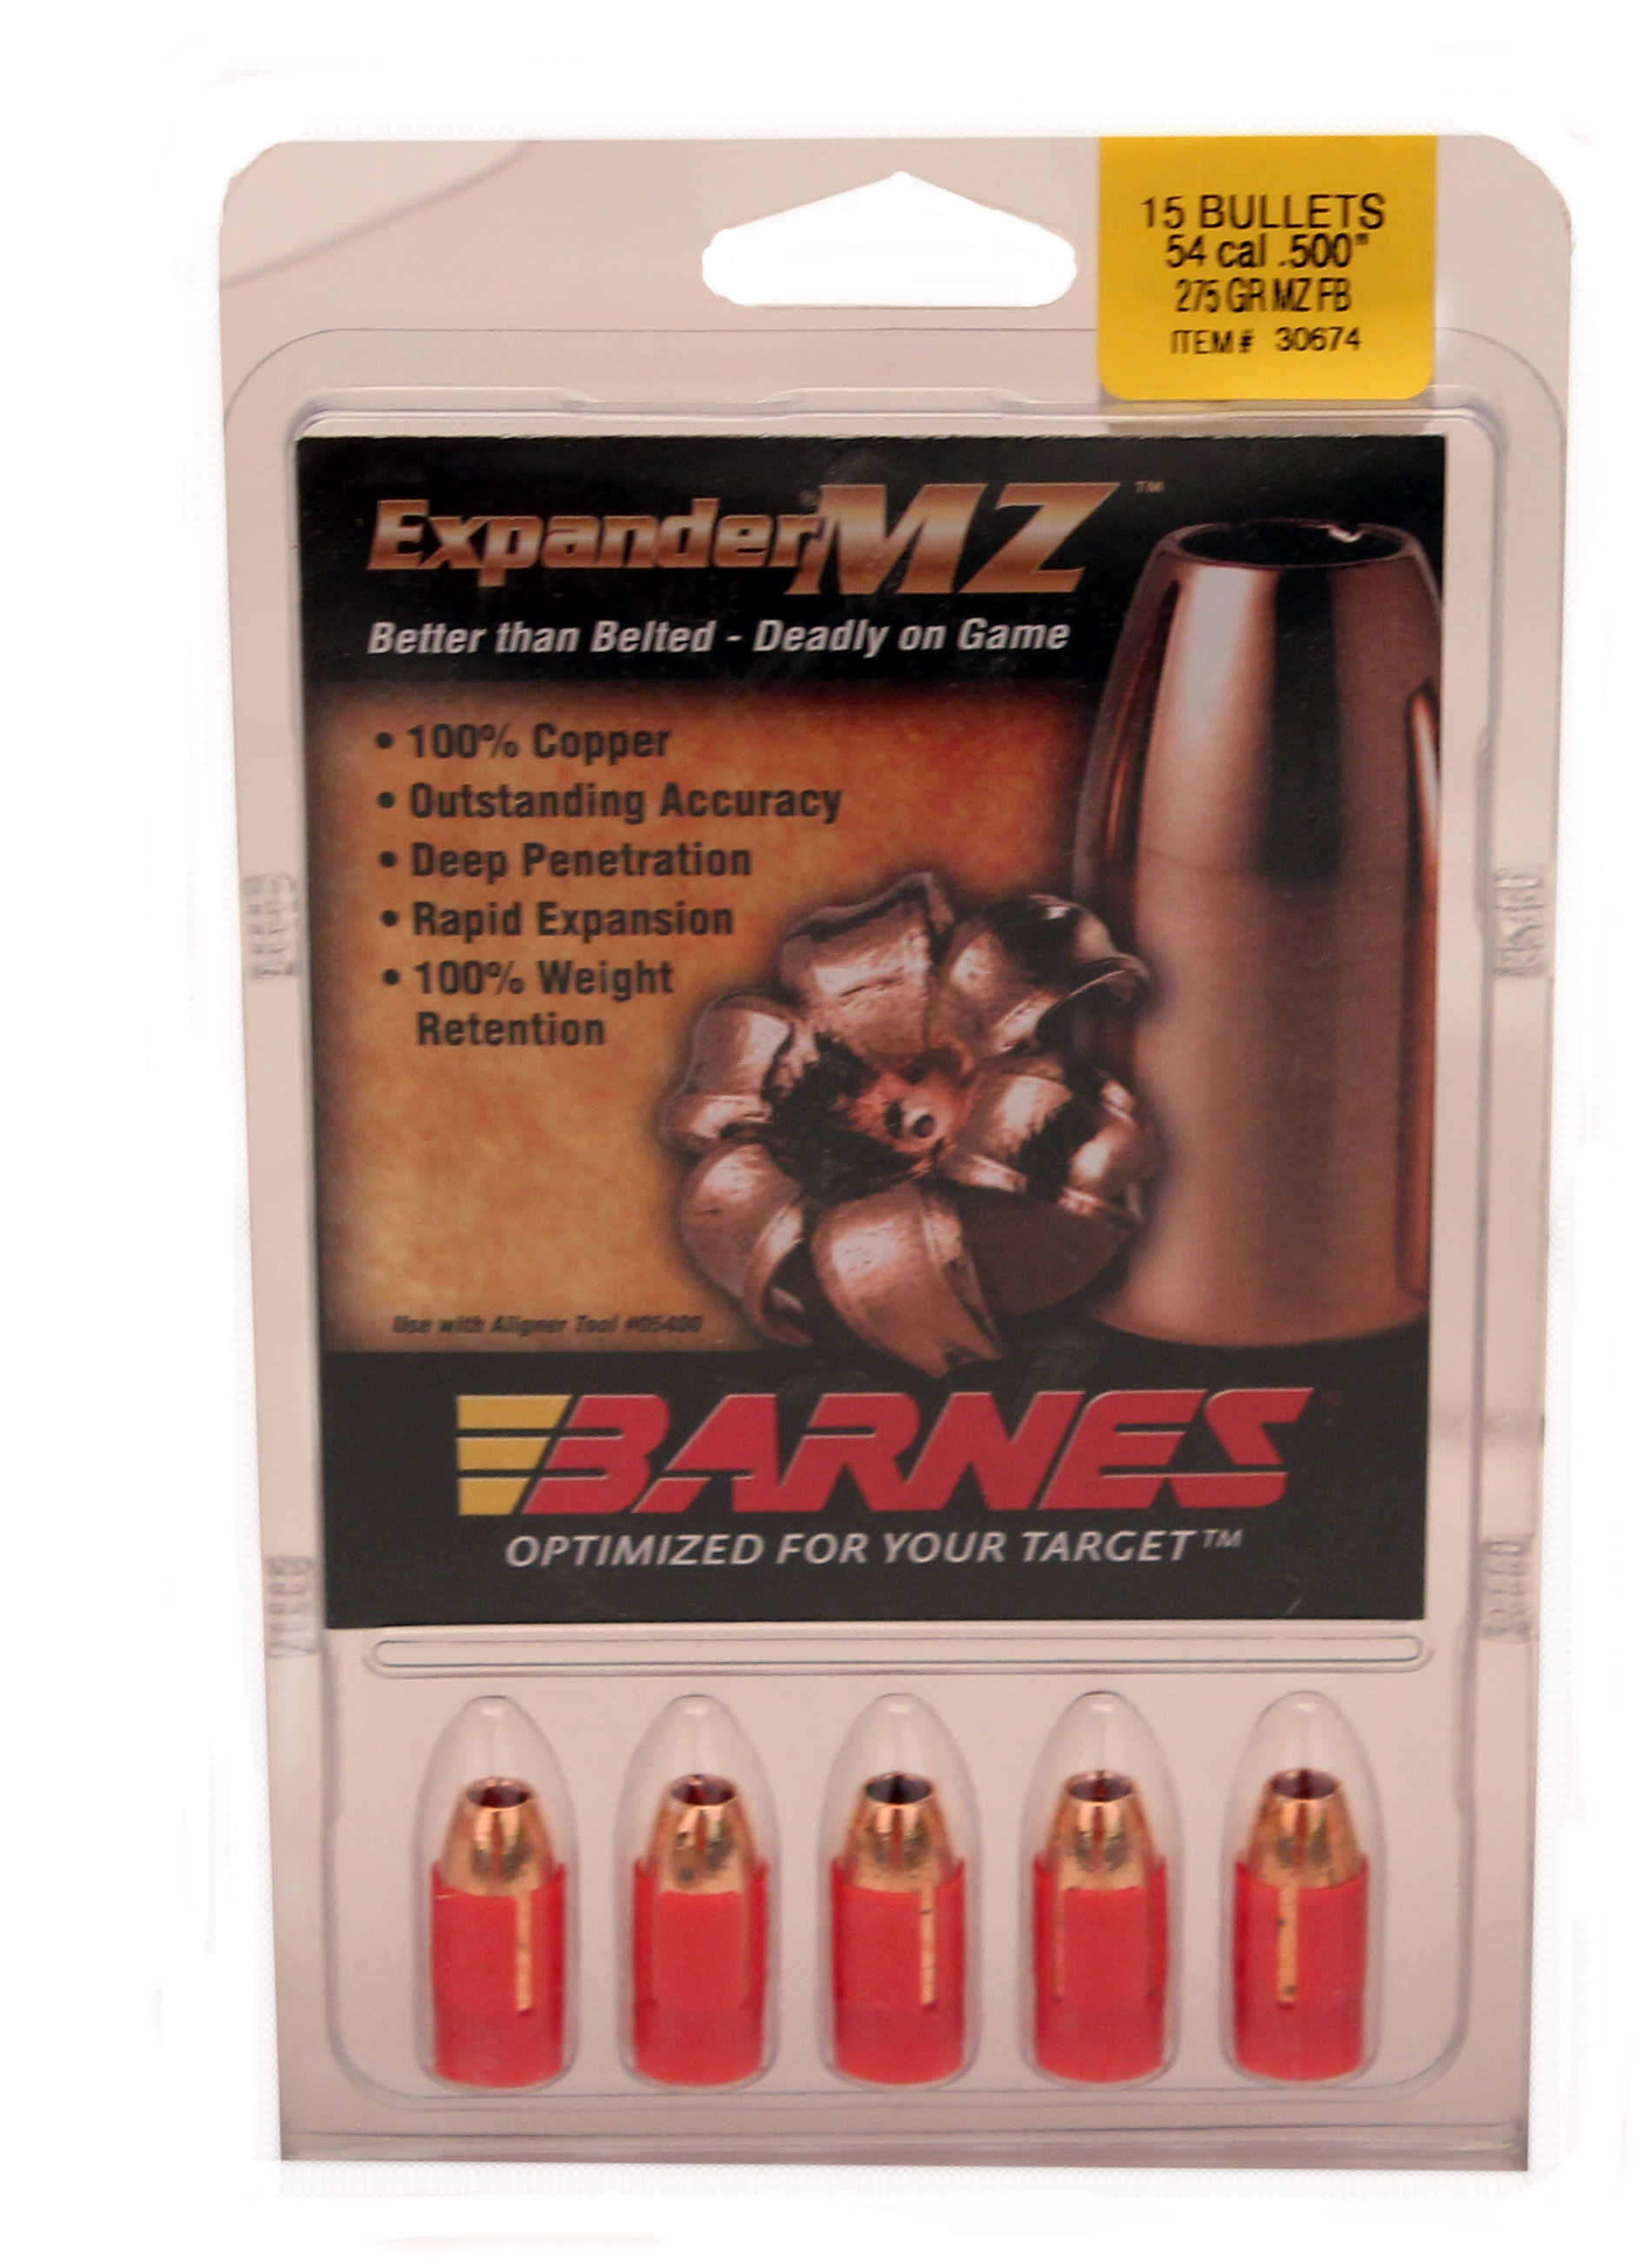 Barnes Bullets 54 Caliber 275 Grain Expander Muzzleloader (Per 15) 50041